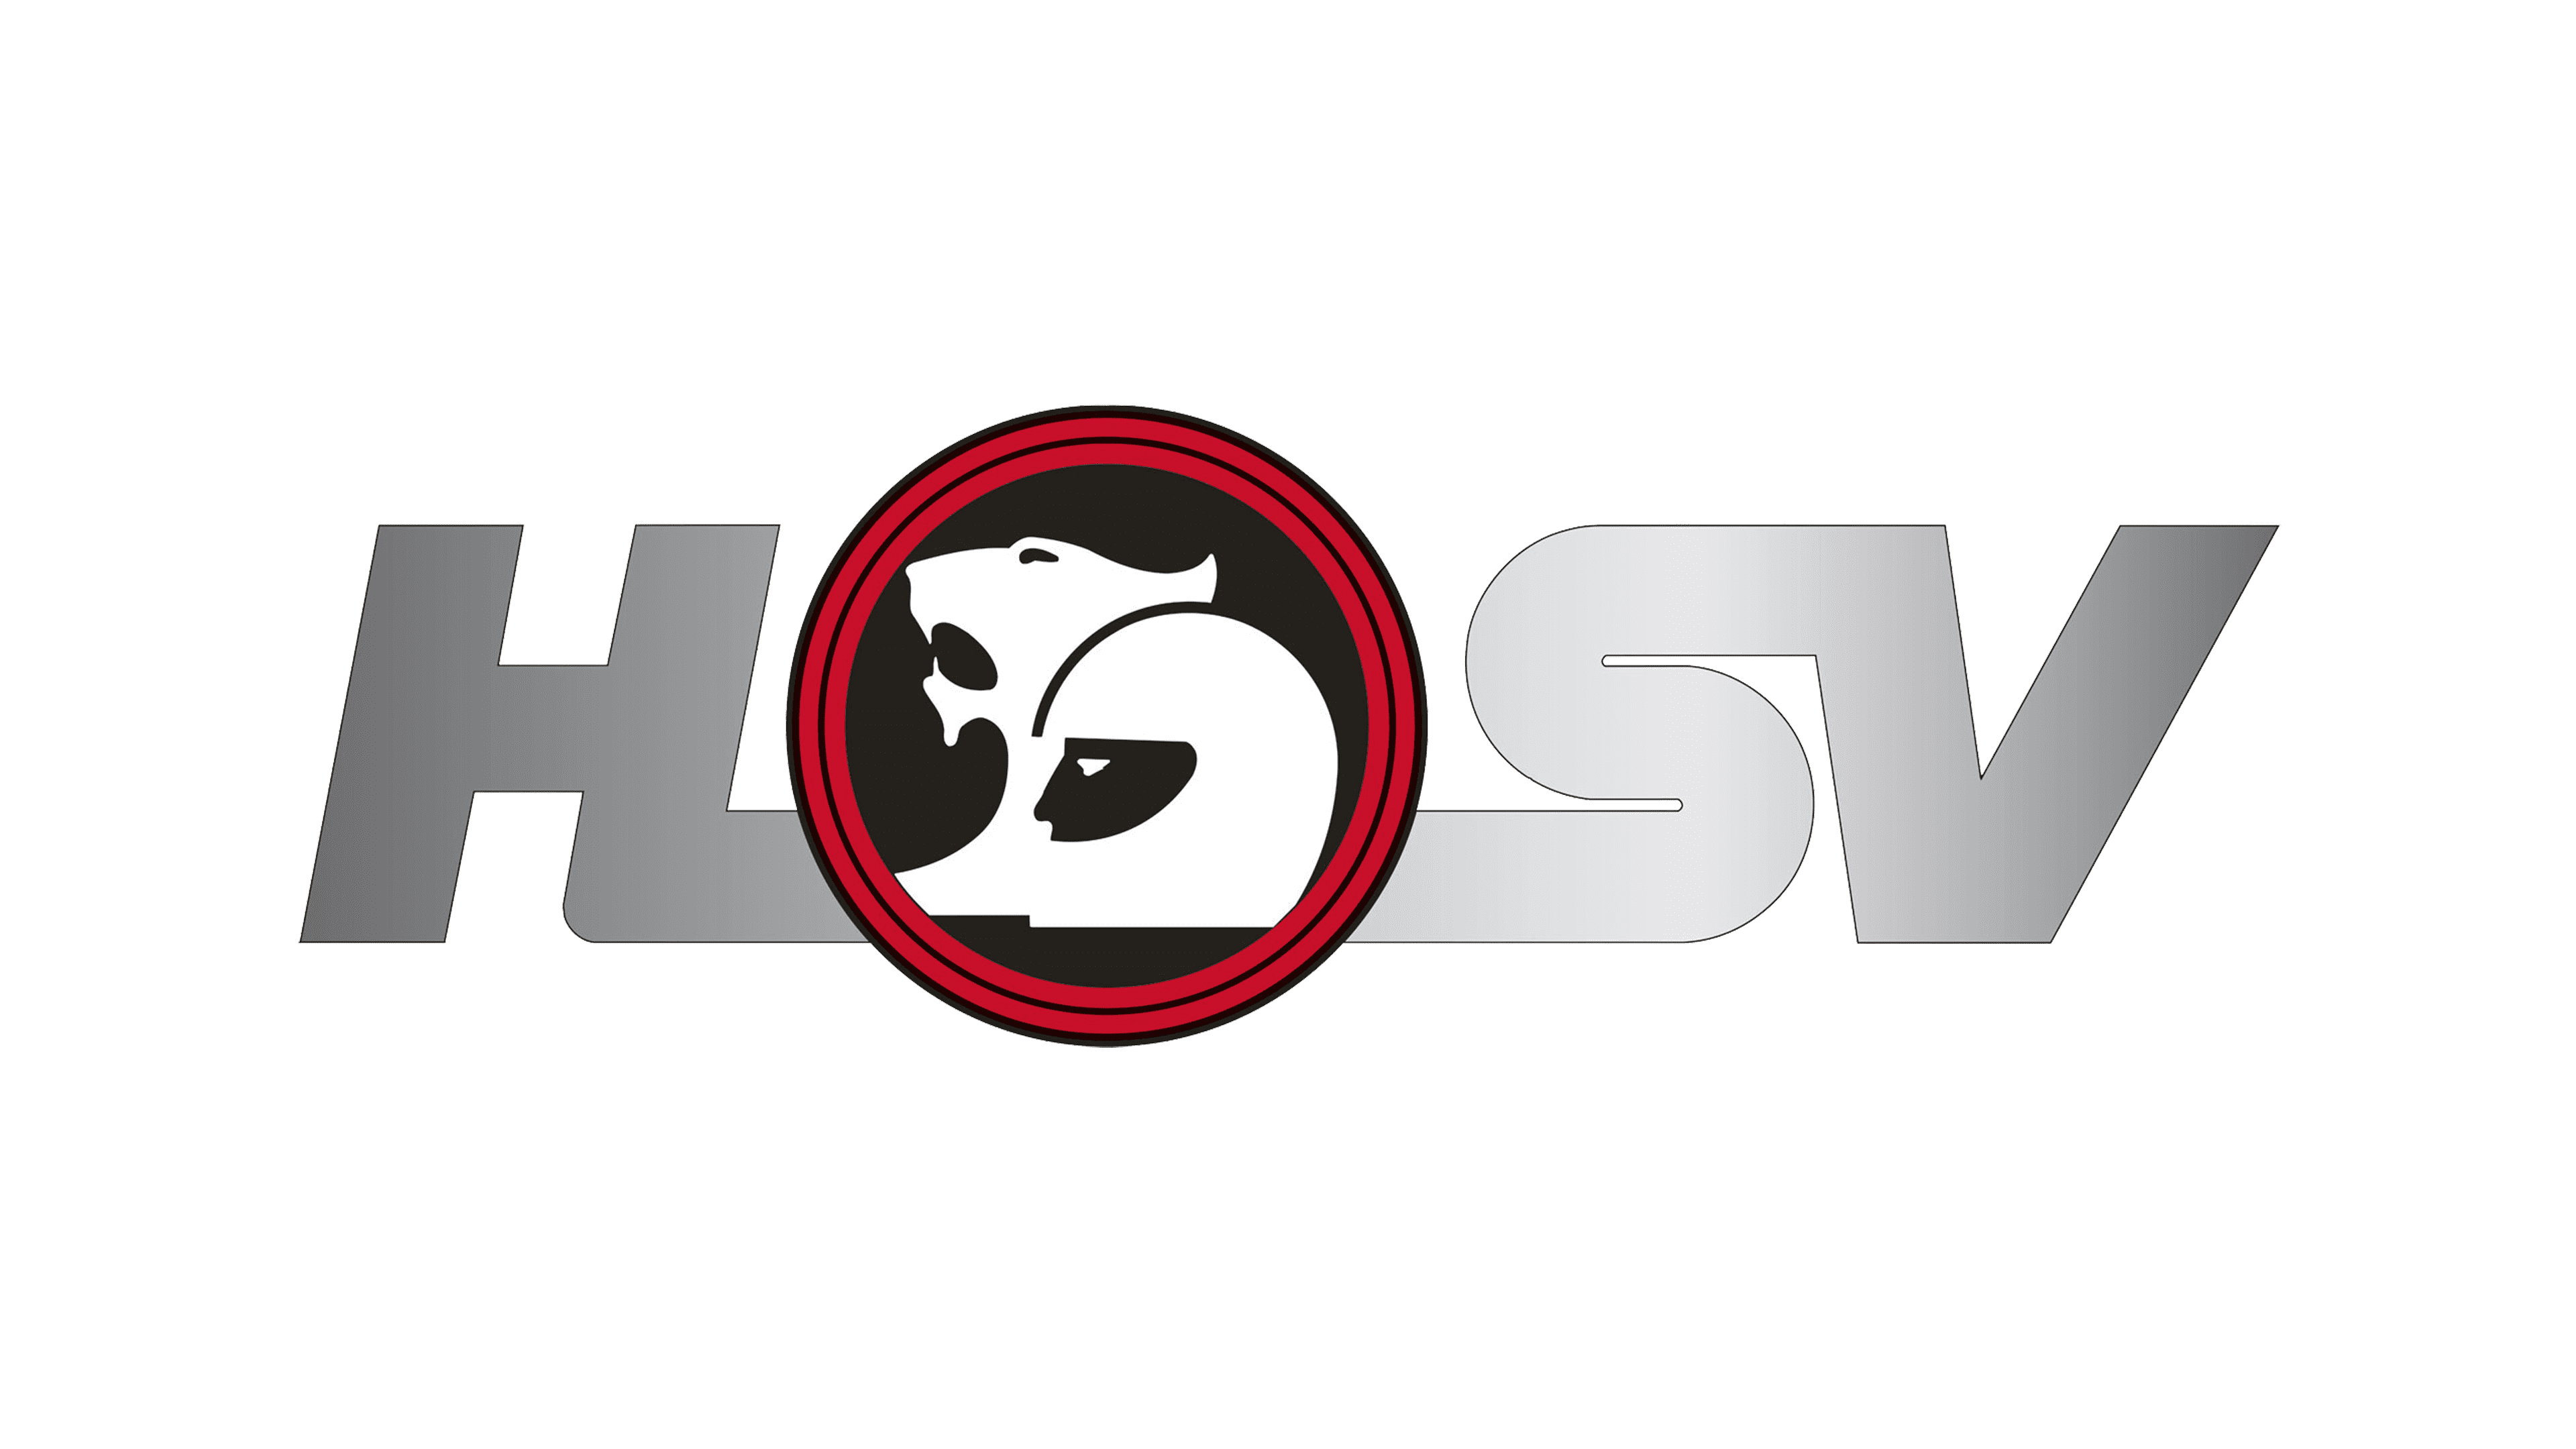 HSV logo Logo